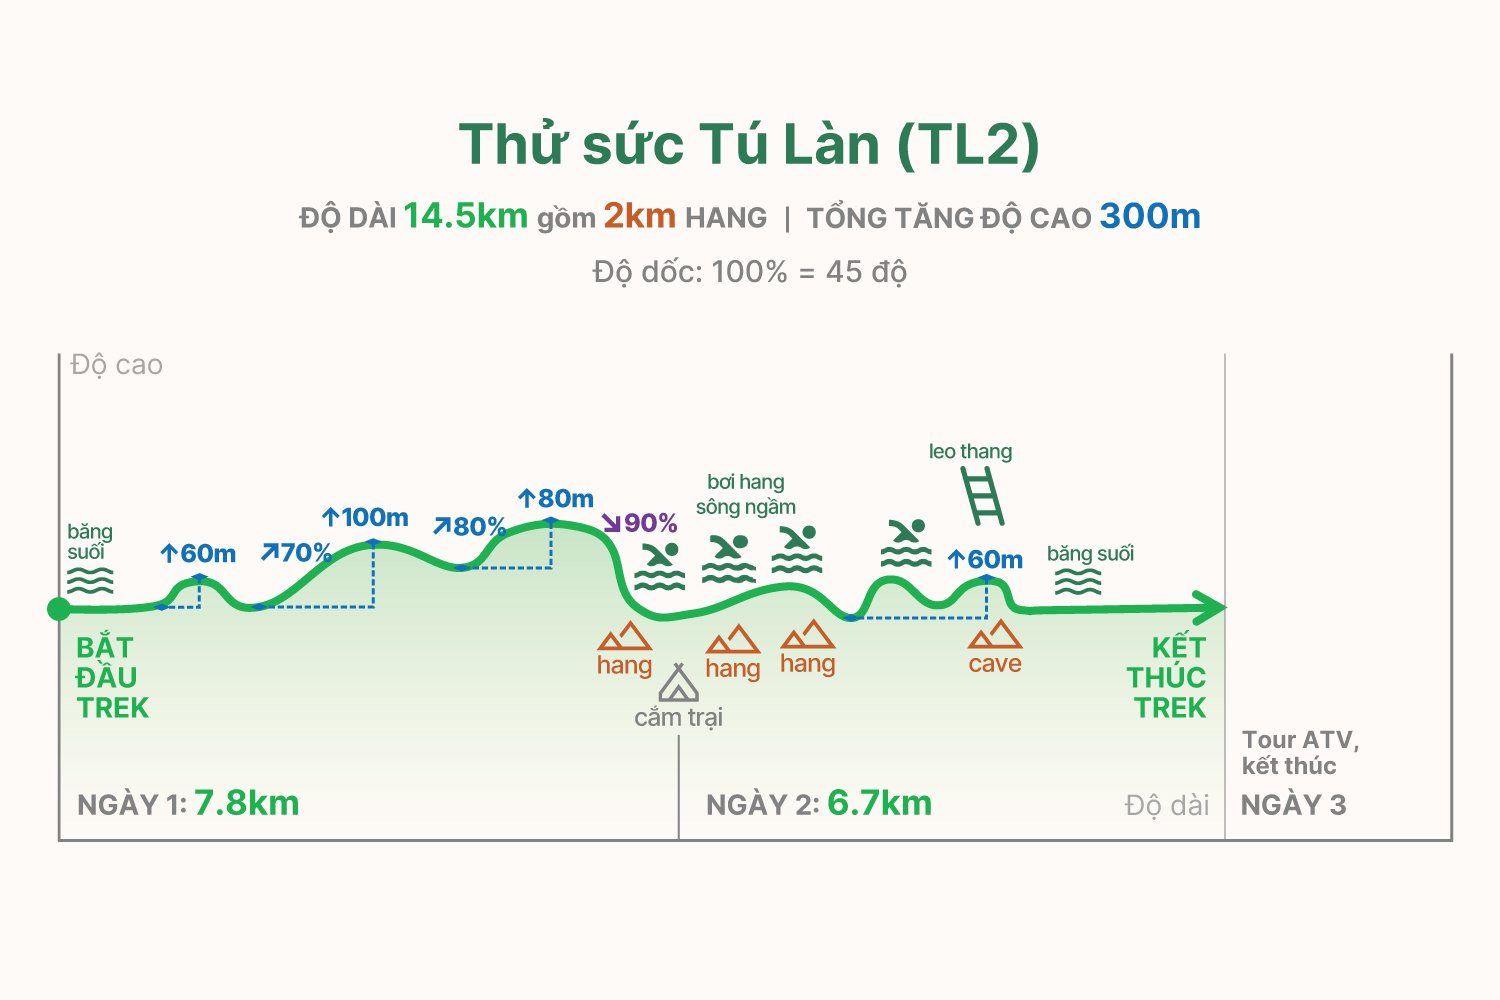 TL2 trekking graph